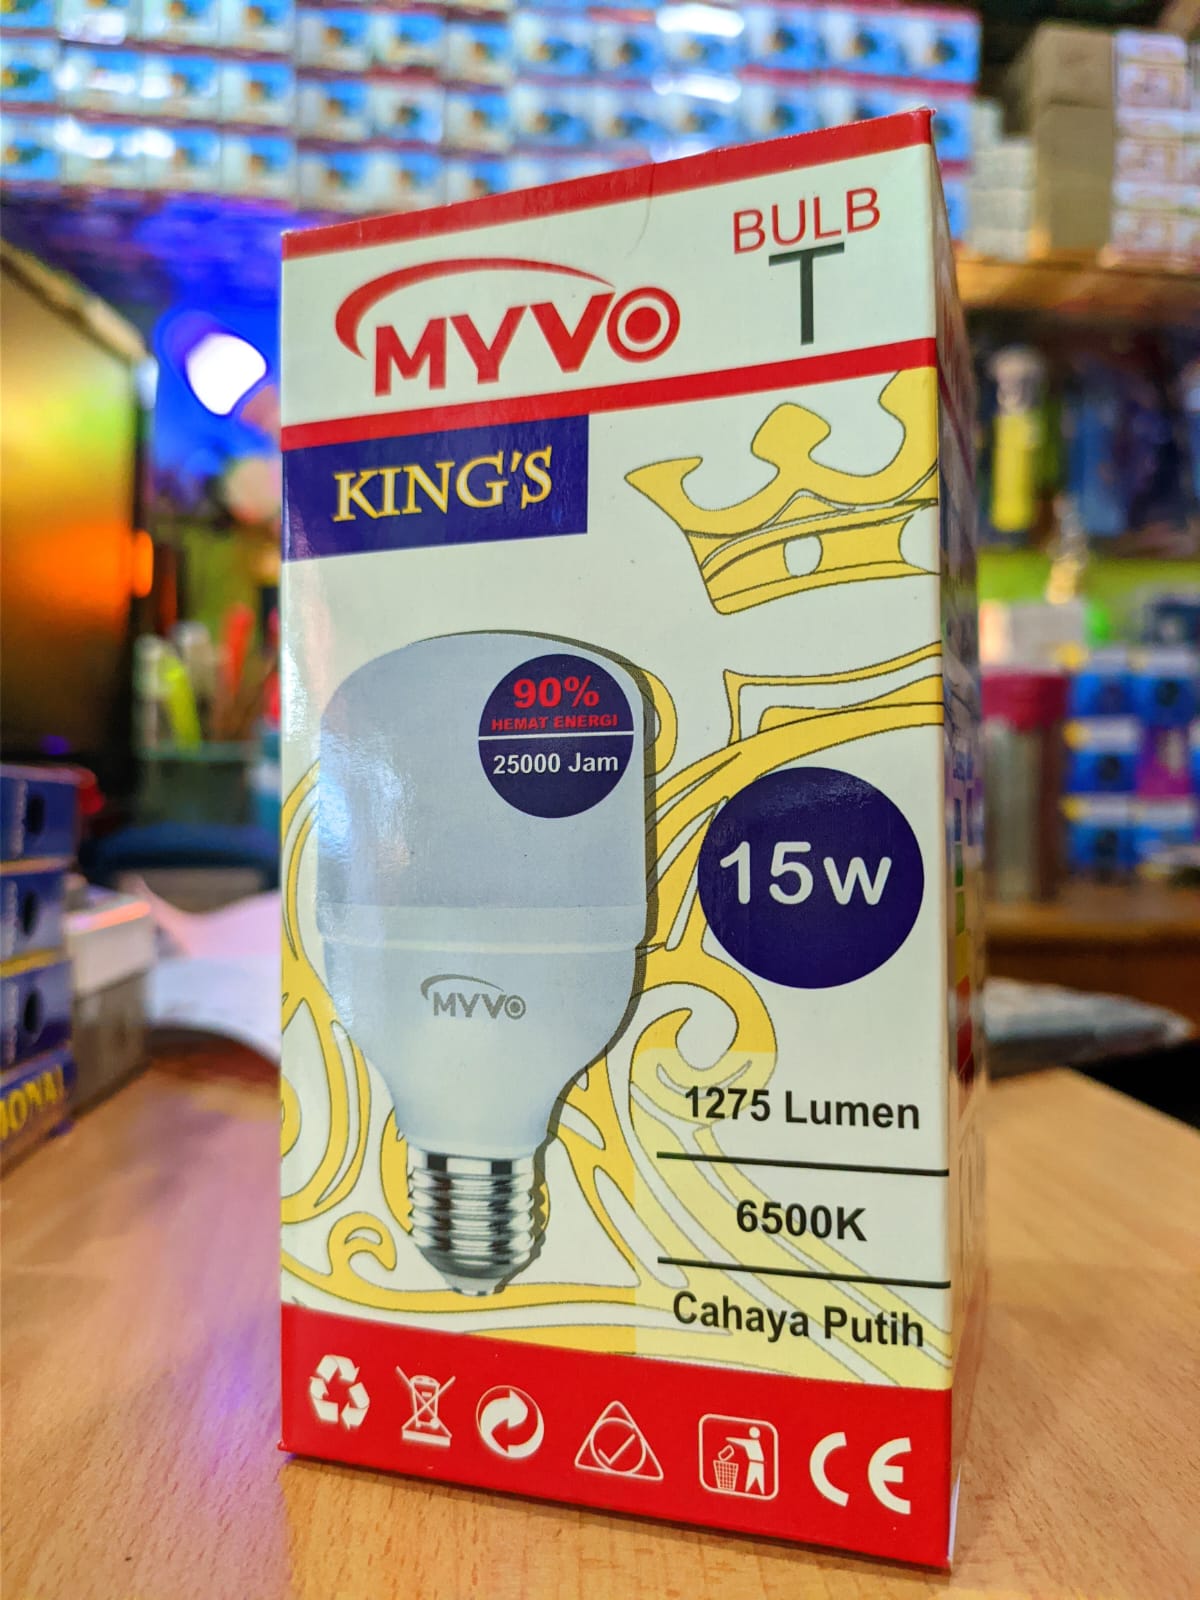 LAMPU LED MIVO KING'S 15 WATT